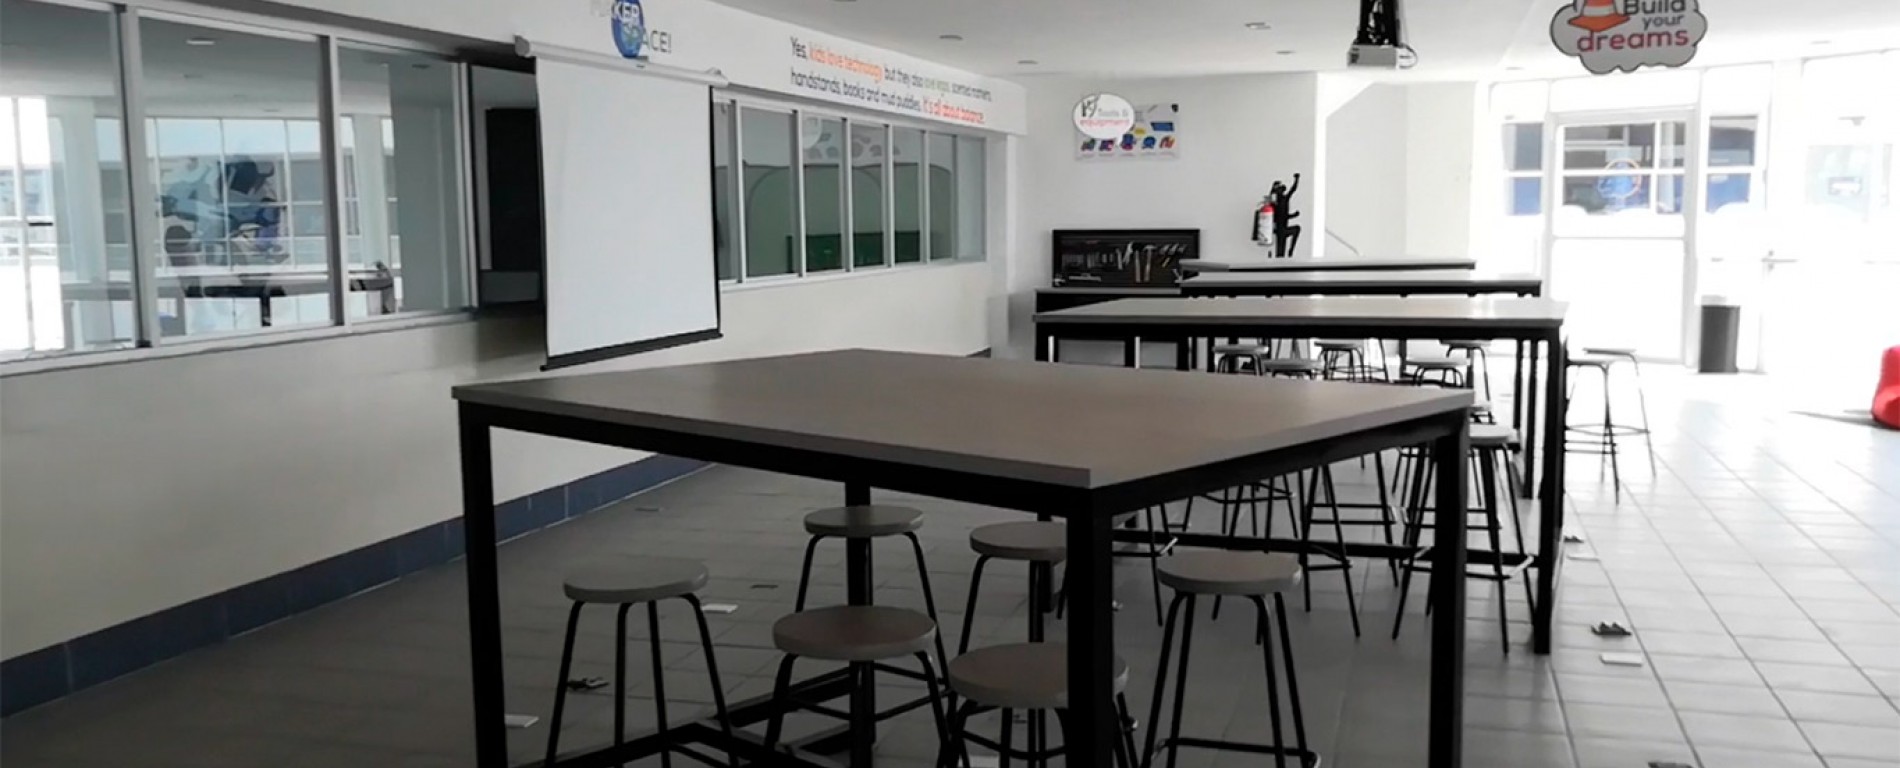 Instalaciones Colegio San Ángel Puebla